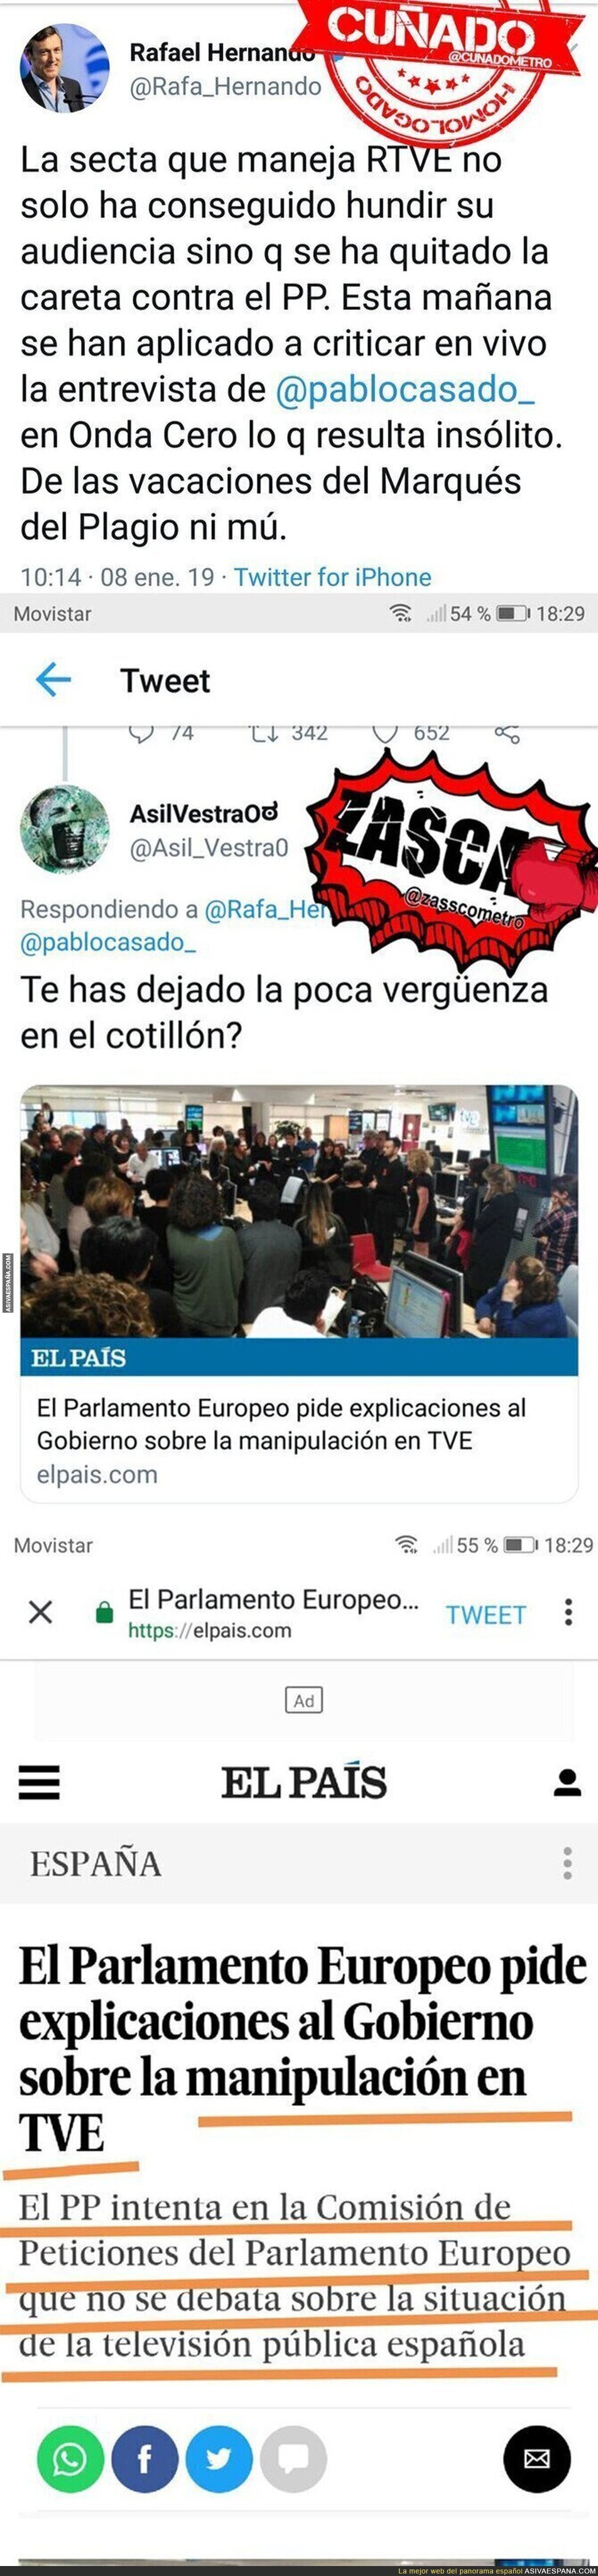 La desvergüenza de Rafael Hernando denunciando la situación en RTVE